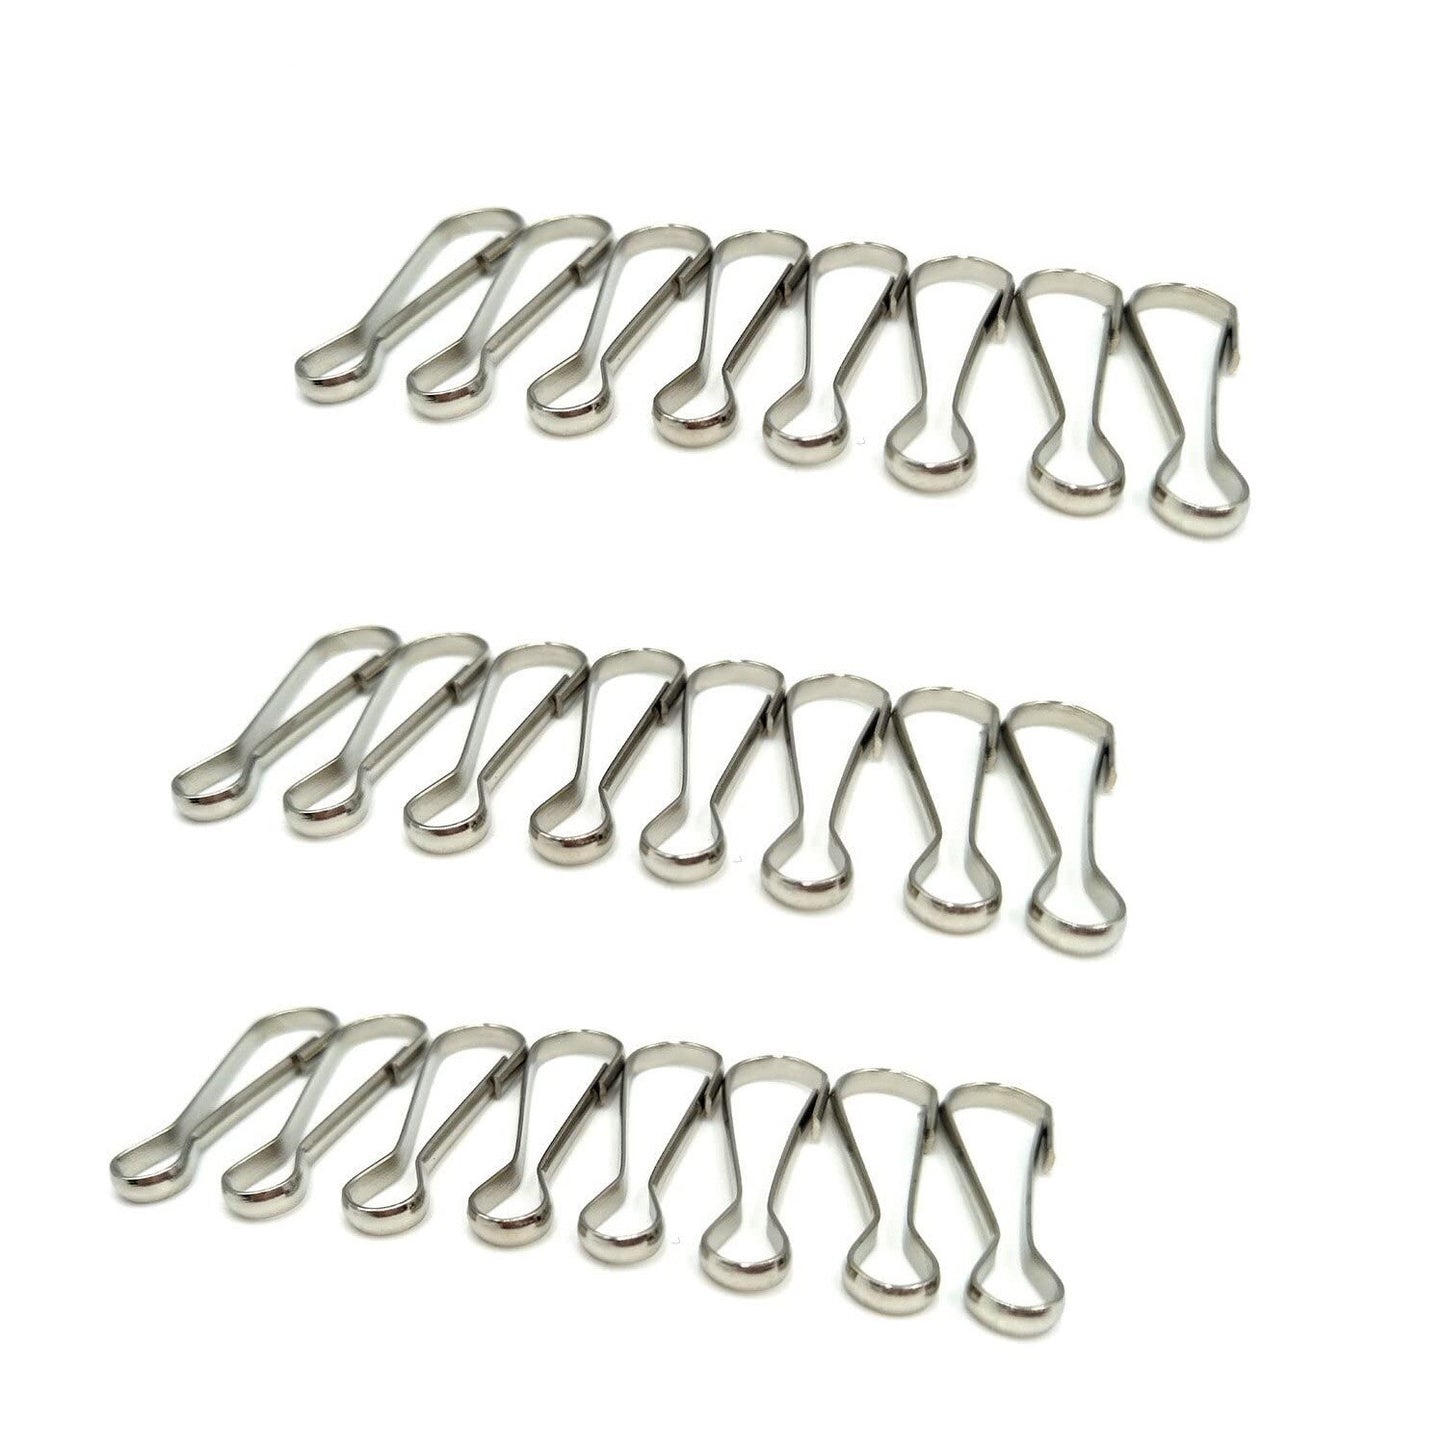 100 Pcs 7 Size Metal Spring Hooks Lanyard Snap Clip Hooks